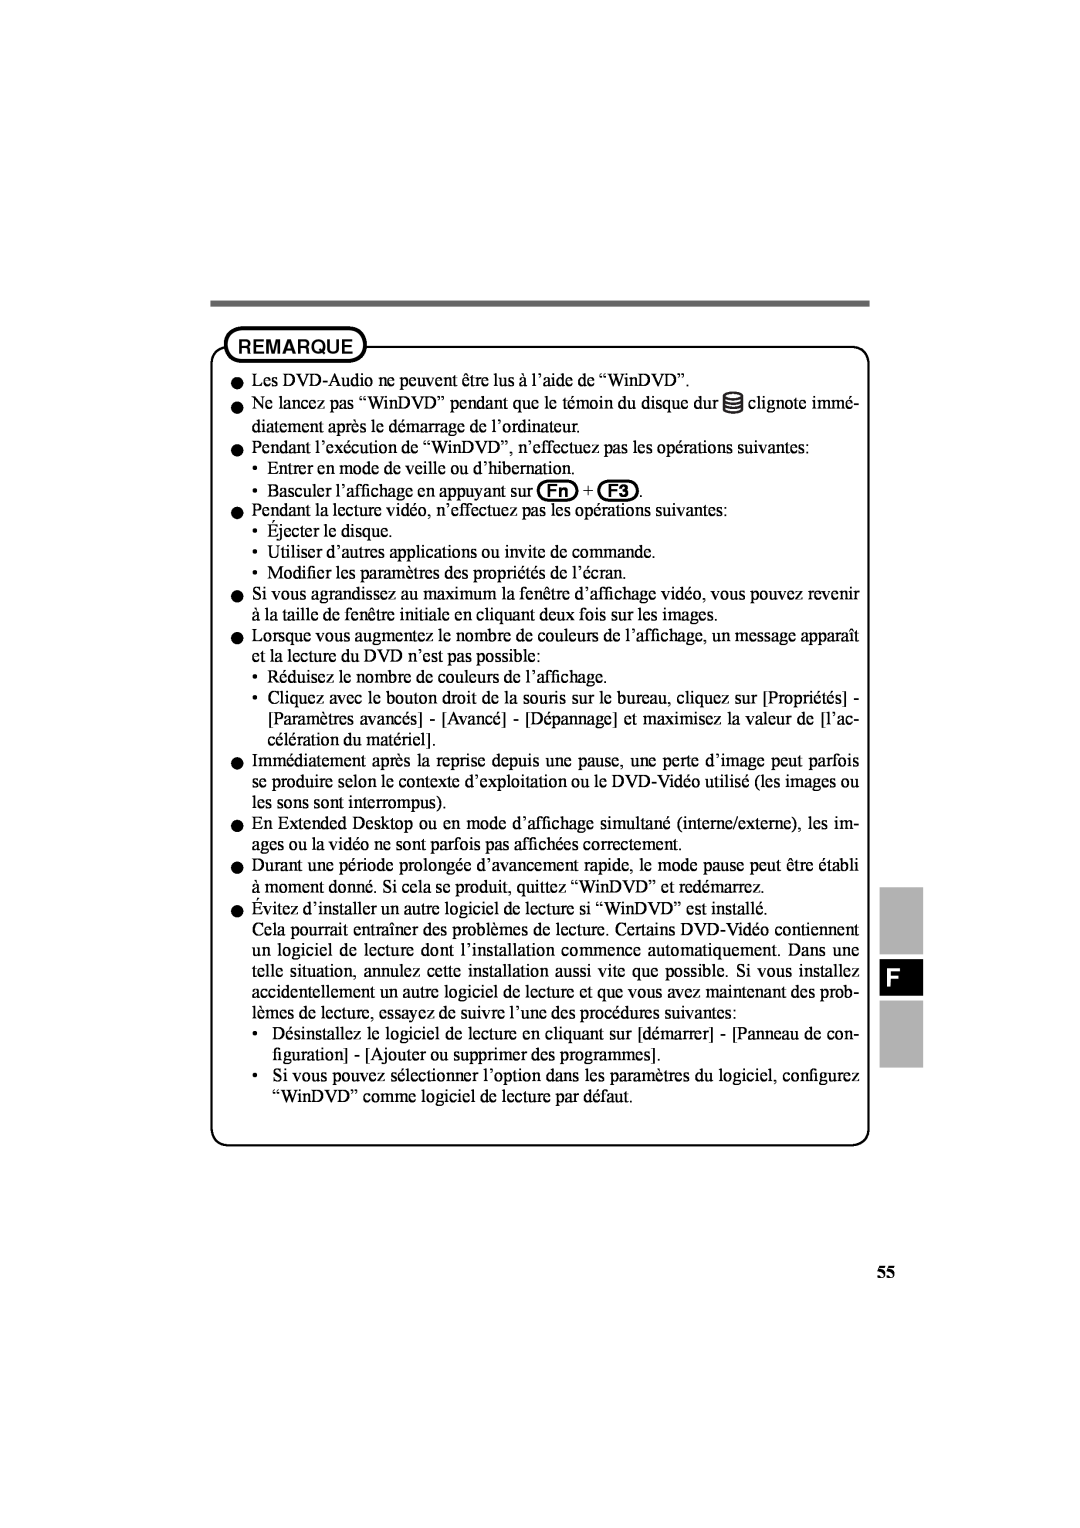 Panasonic CF-VDR301U specifications Remarque, Les DVD-Audio ne peuvent être lus à l’aide de “WinDVD” 